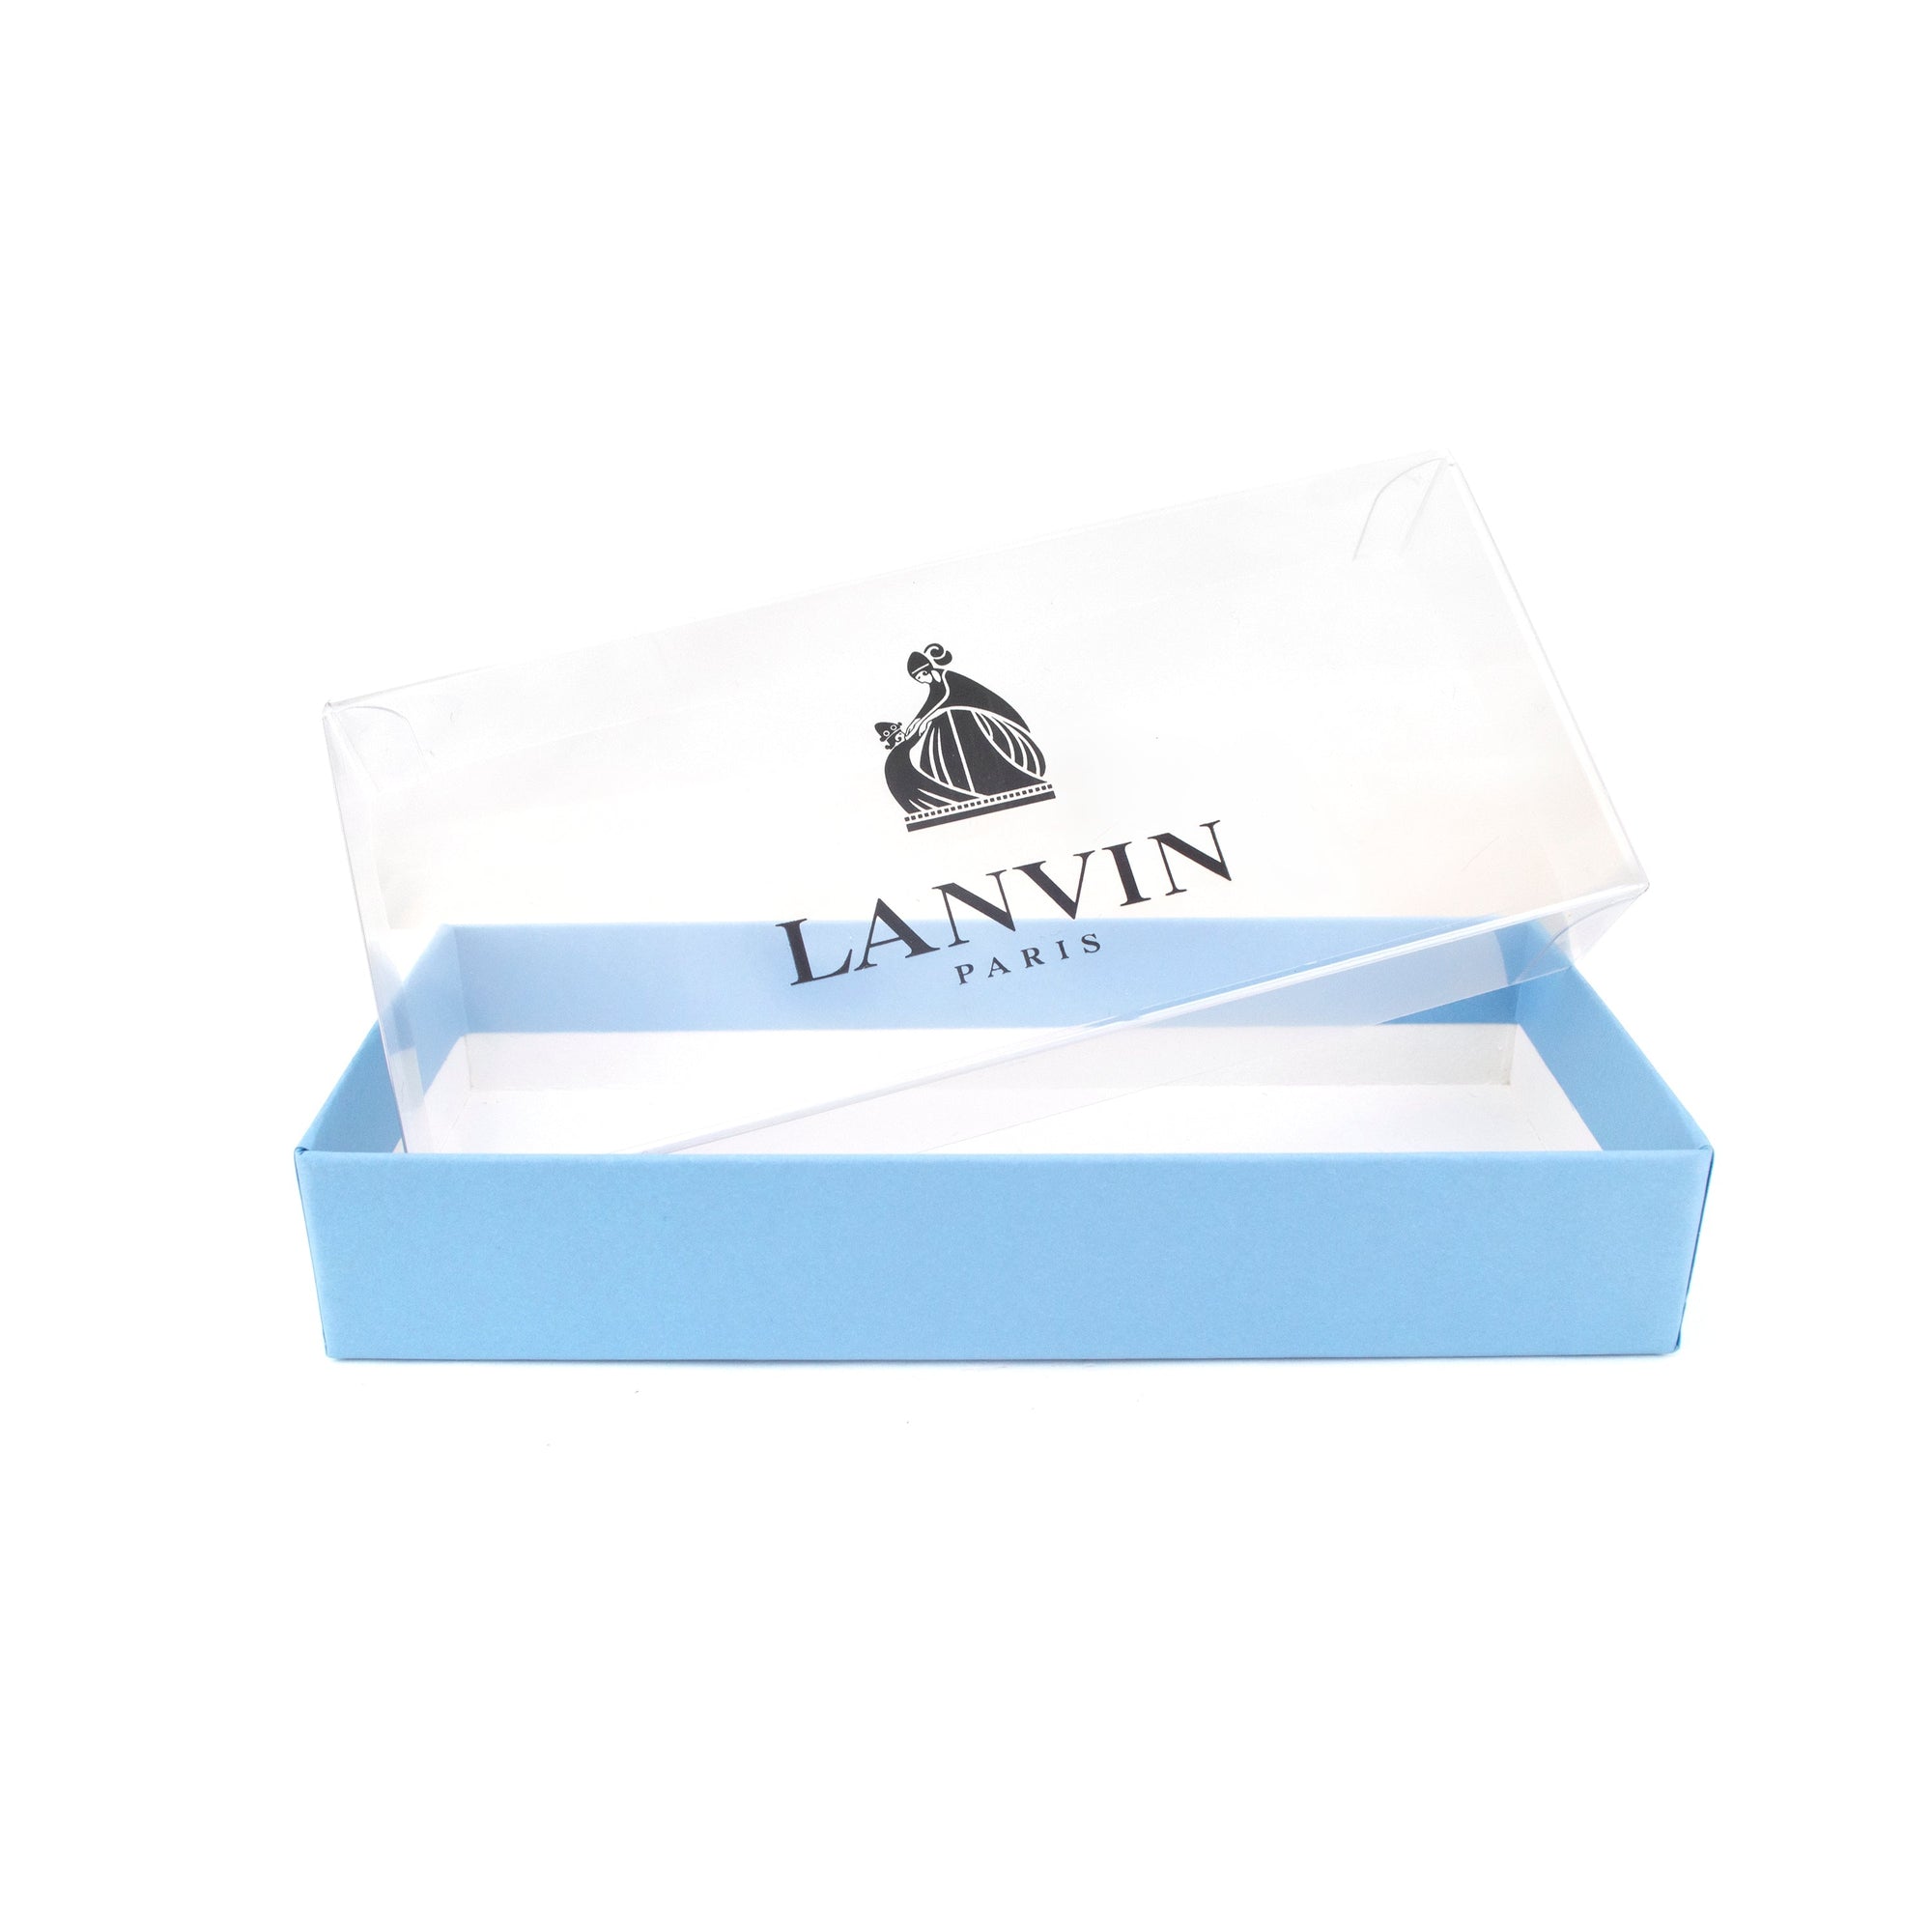 Lanvin Pre-tied Classic Silk Bow Tie in Silver-Cufflinks.com.sg | Neckties.com.sg